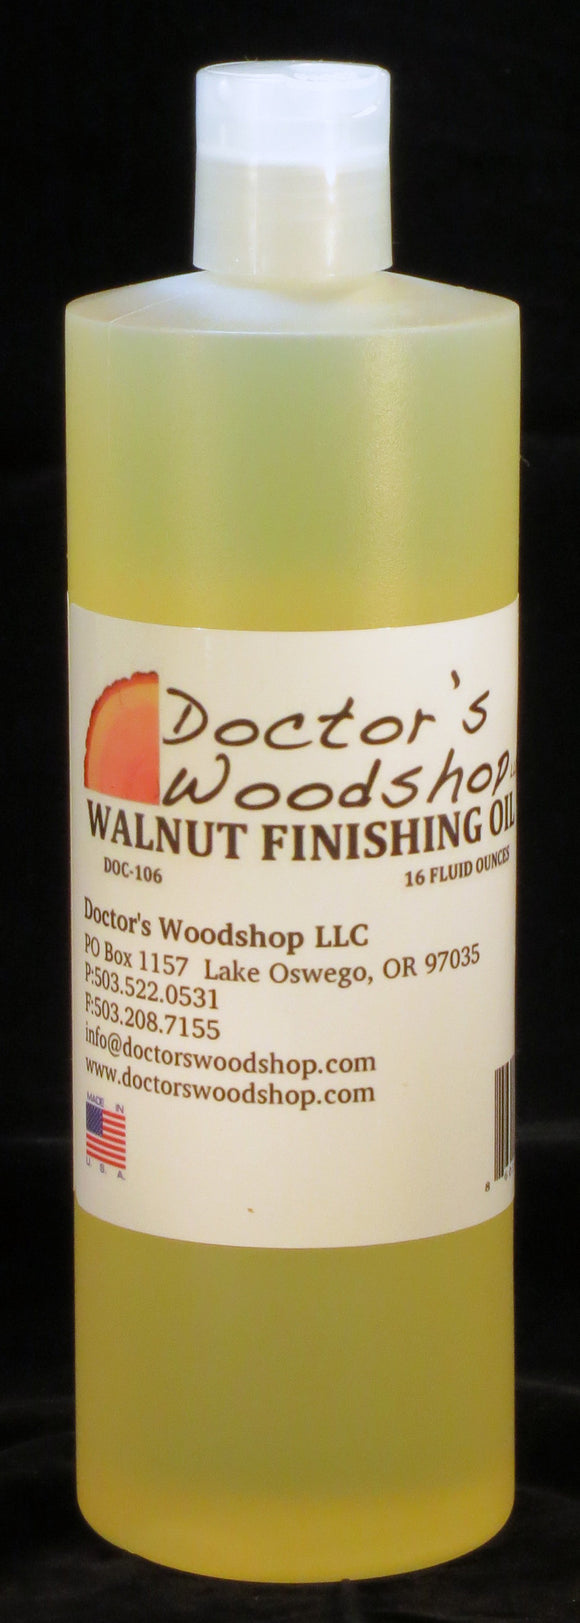 Doctor's Woodshop Walnut Finishing Oil